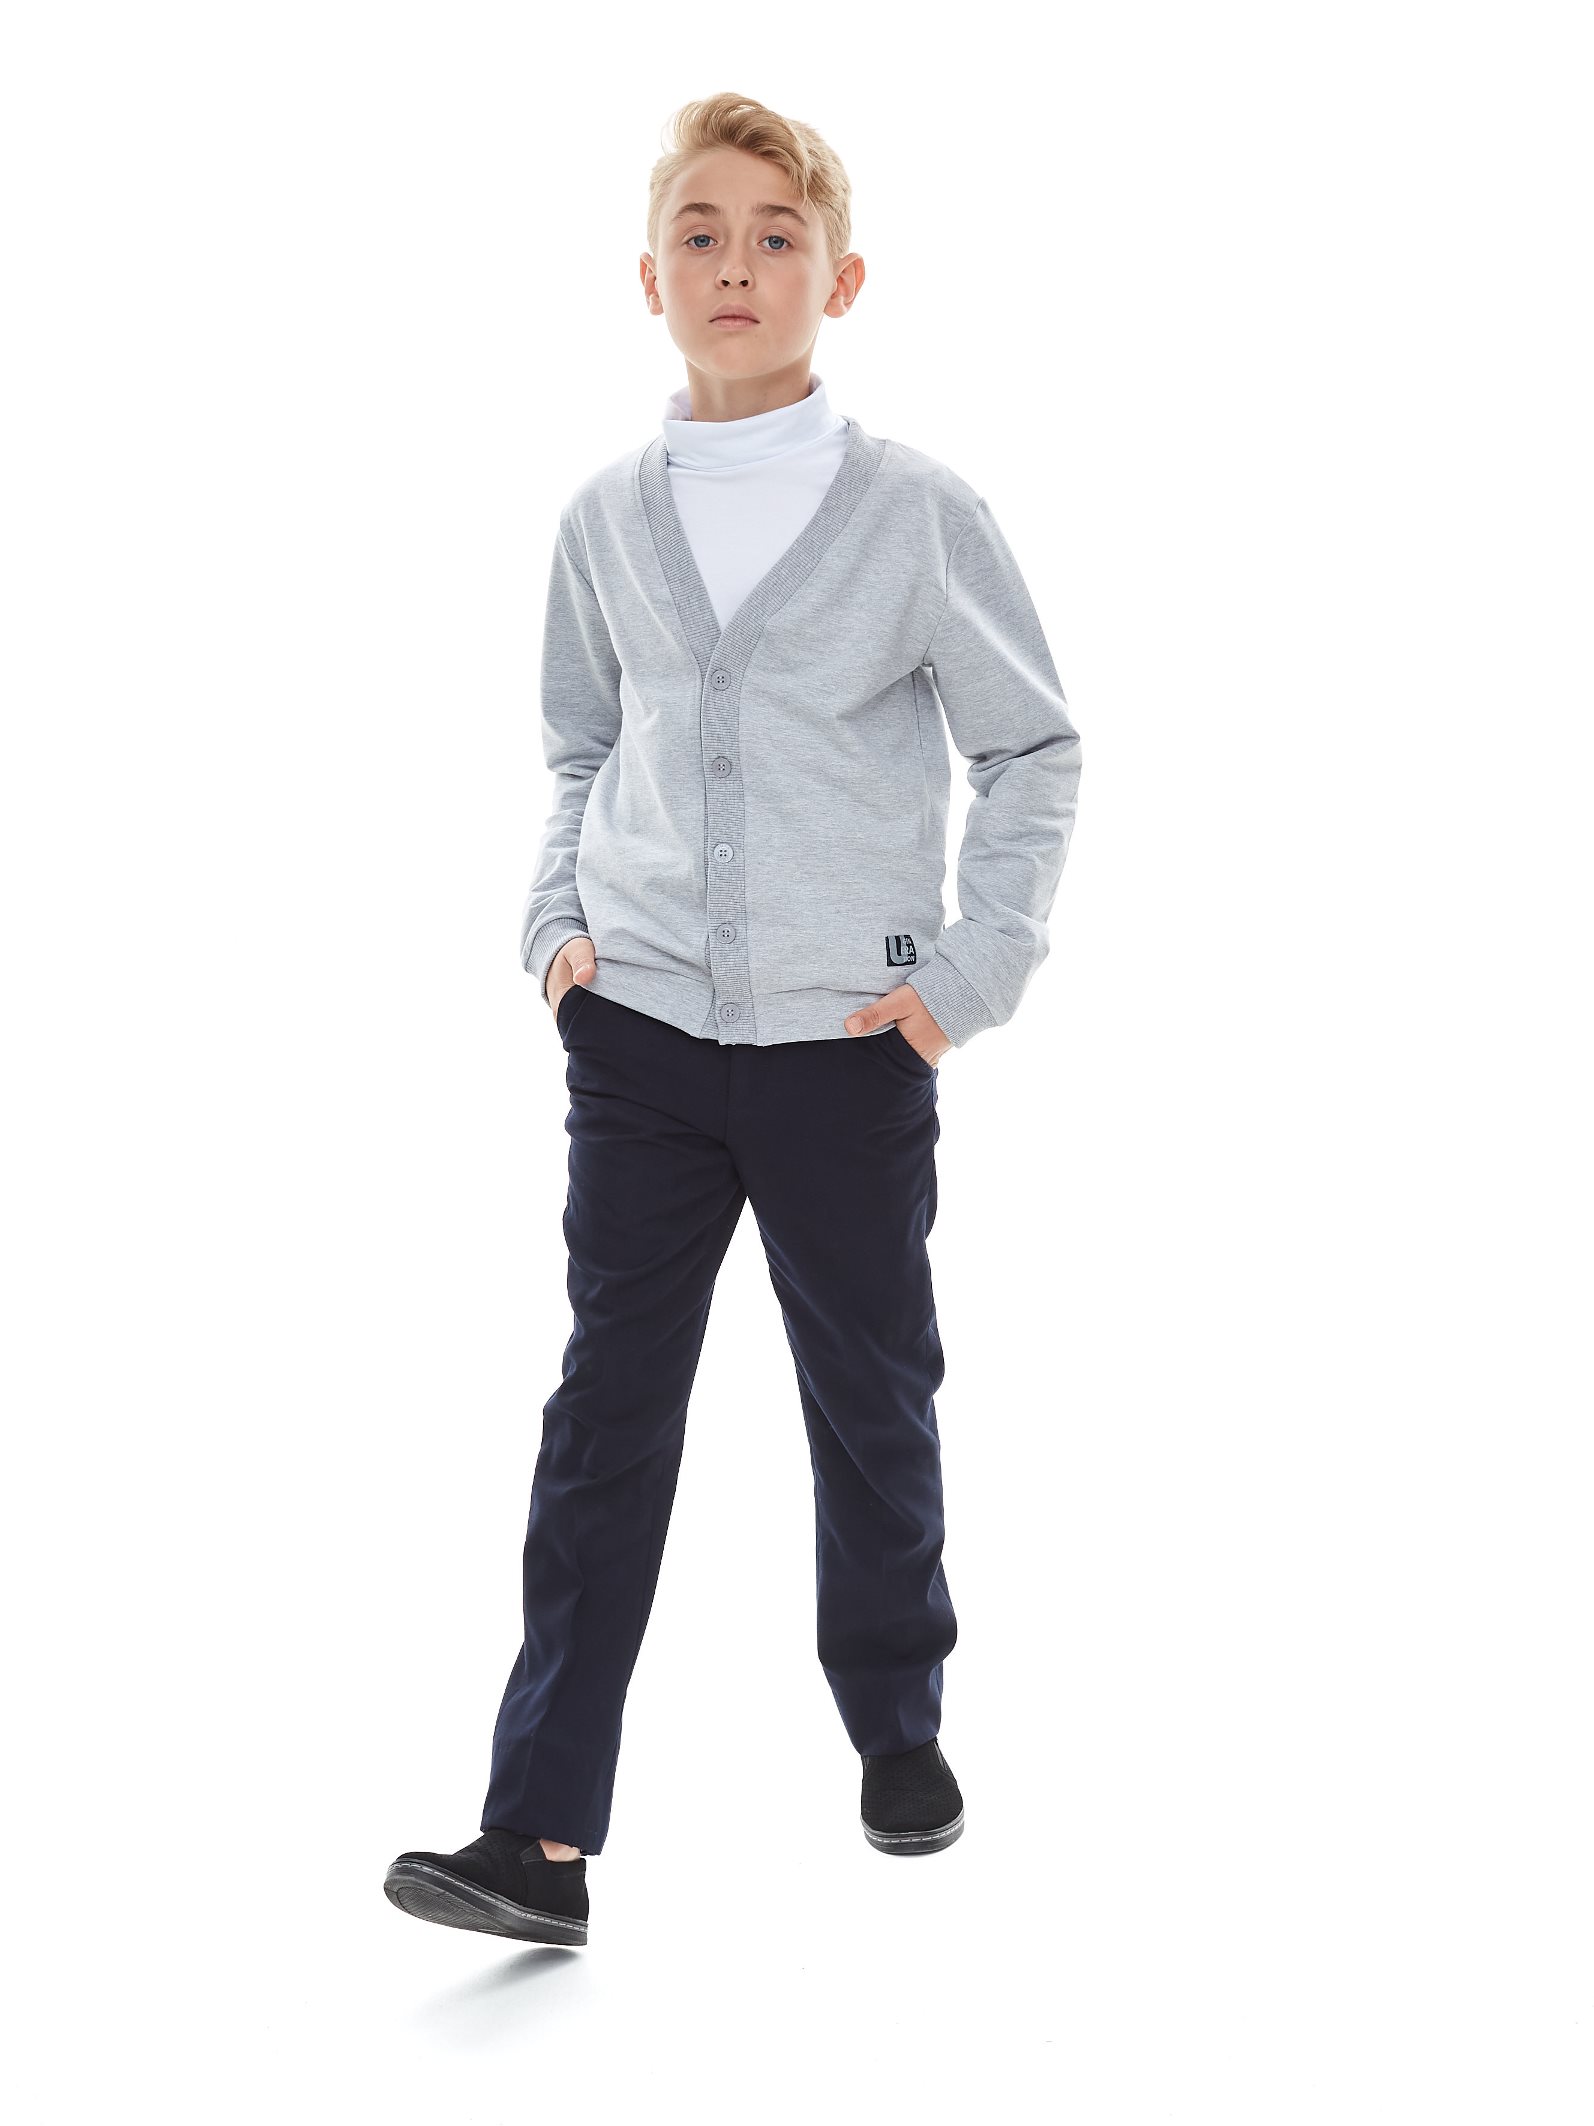 модная детская одежда 1s6-004-191 кардиган для мальчика джемпера/водолазки/жакеты